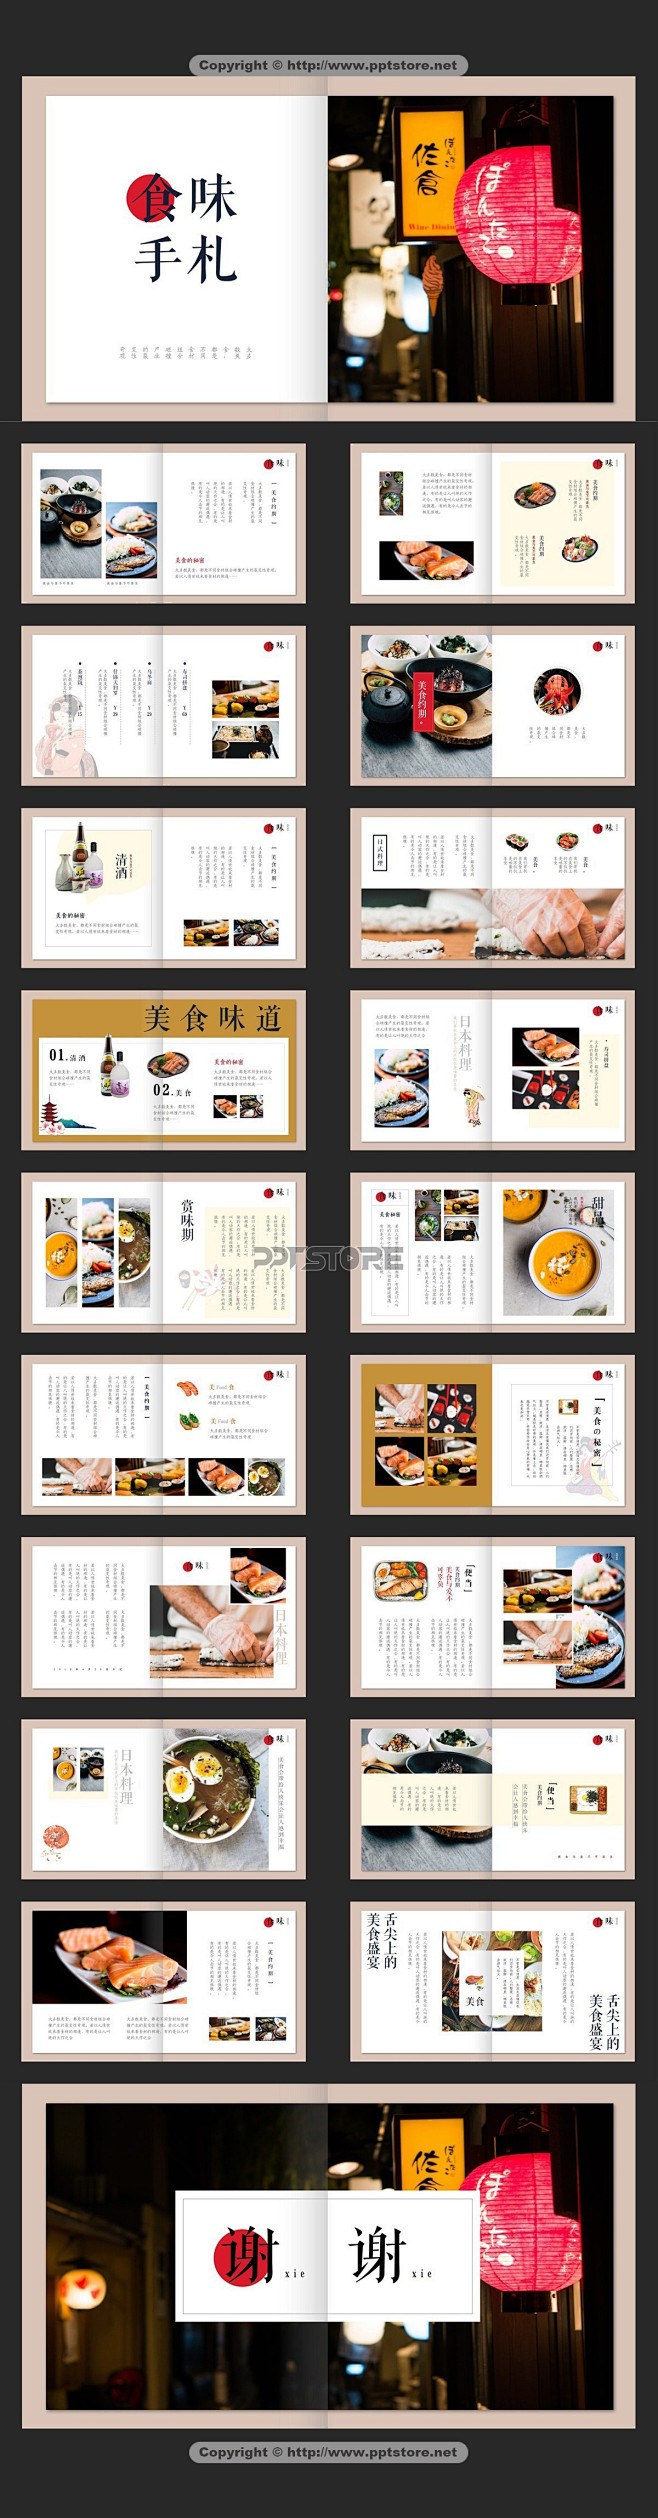 【一个册子】日式文艺美食画册模板__PP...